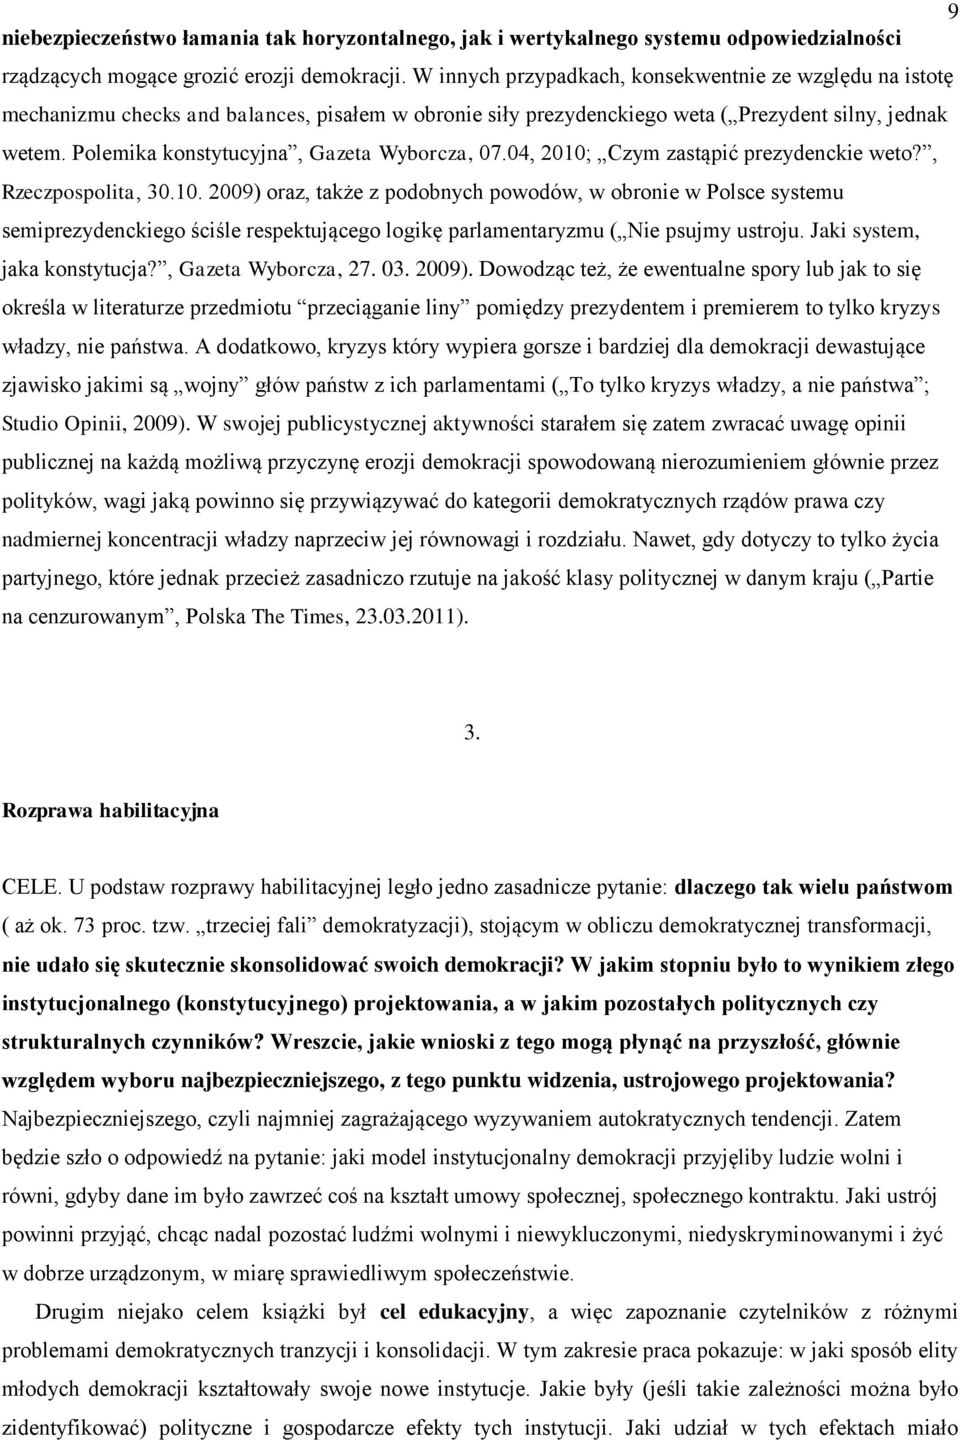 Polemika konstytucyjna, Gazeta Wyborcza, 07.04, 2010;